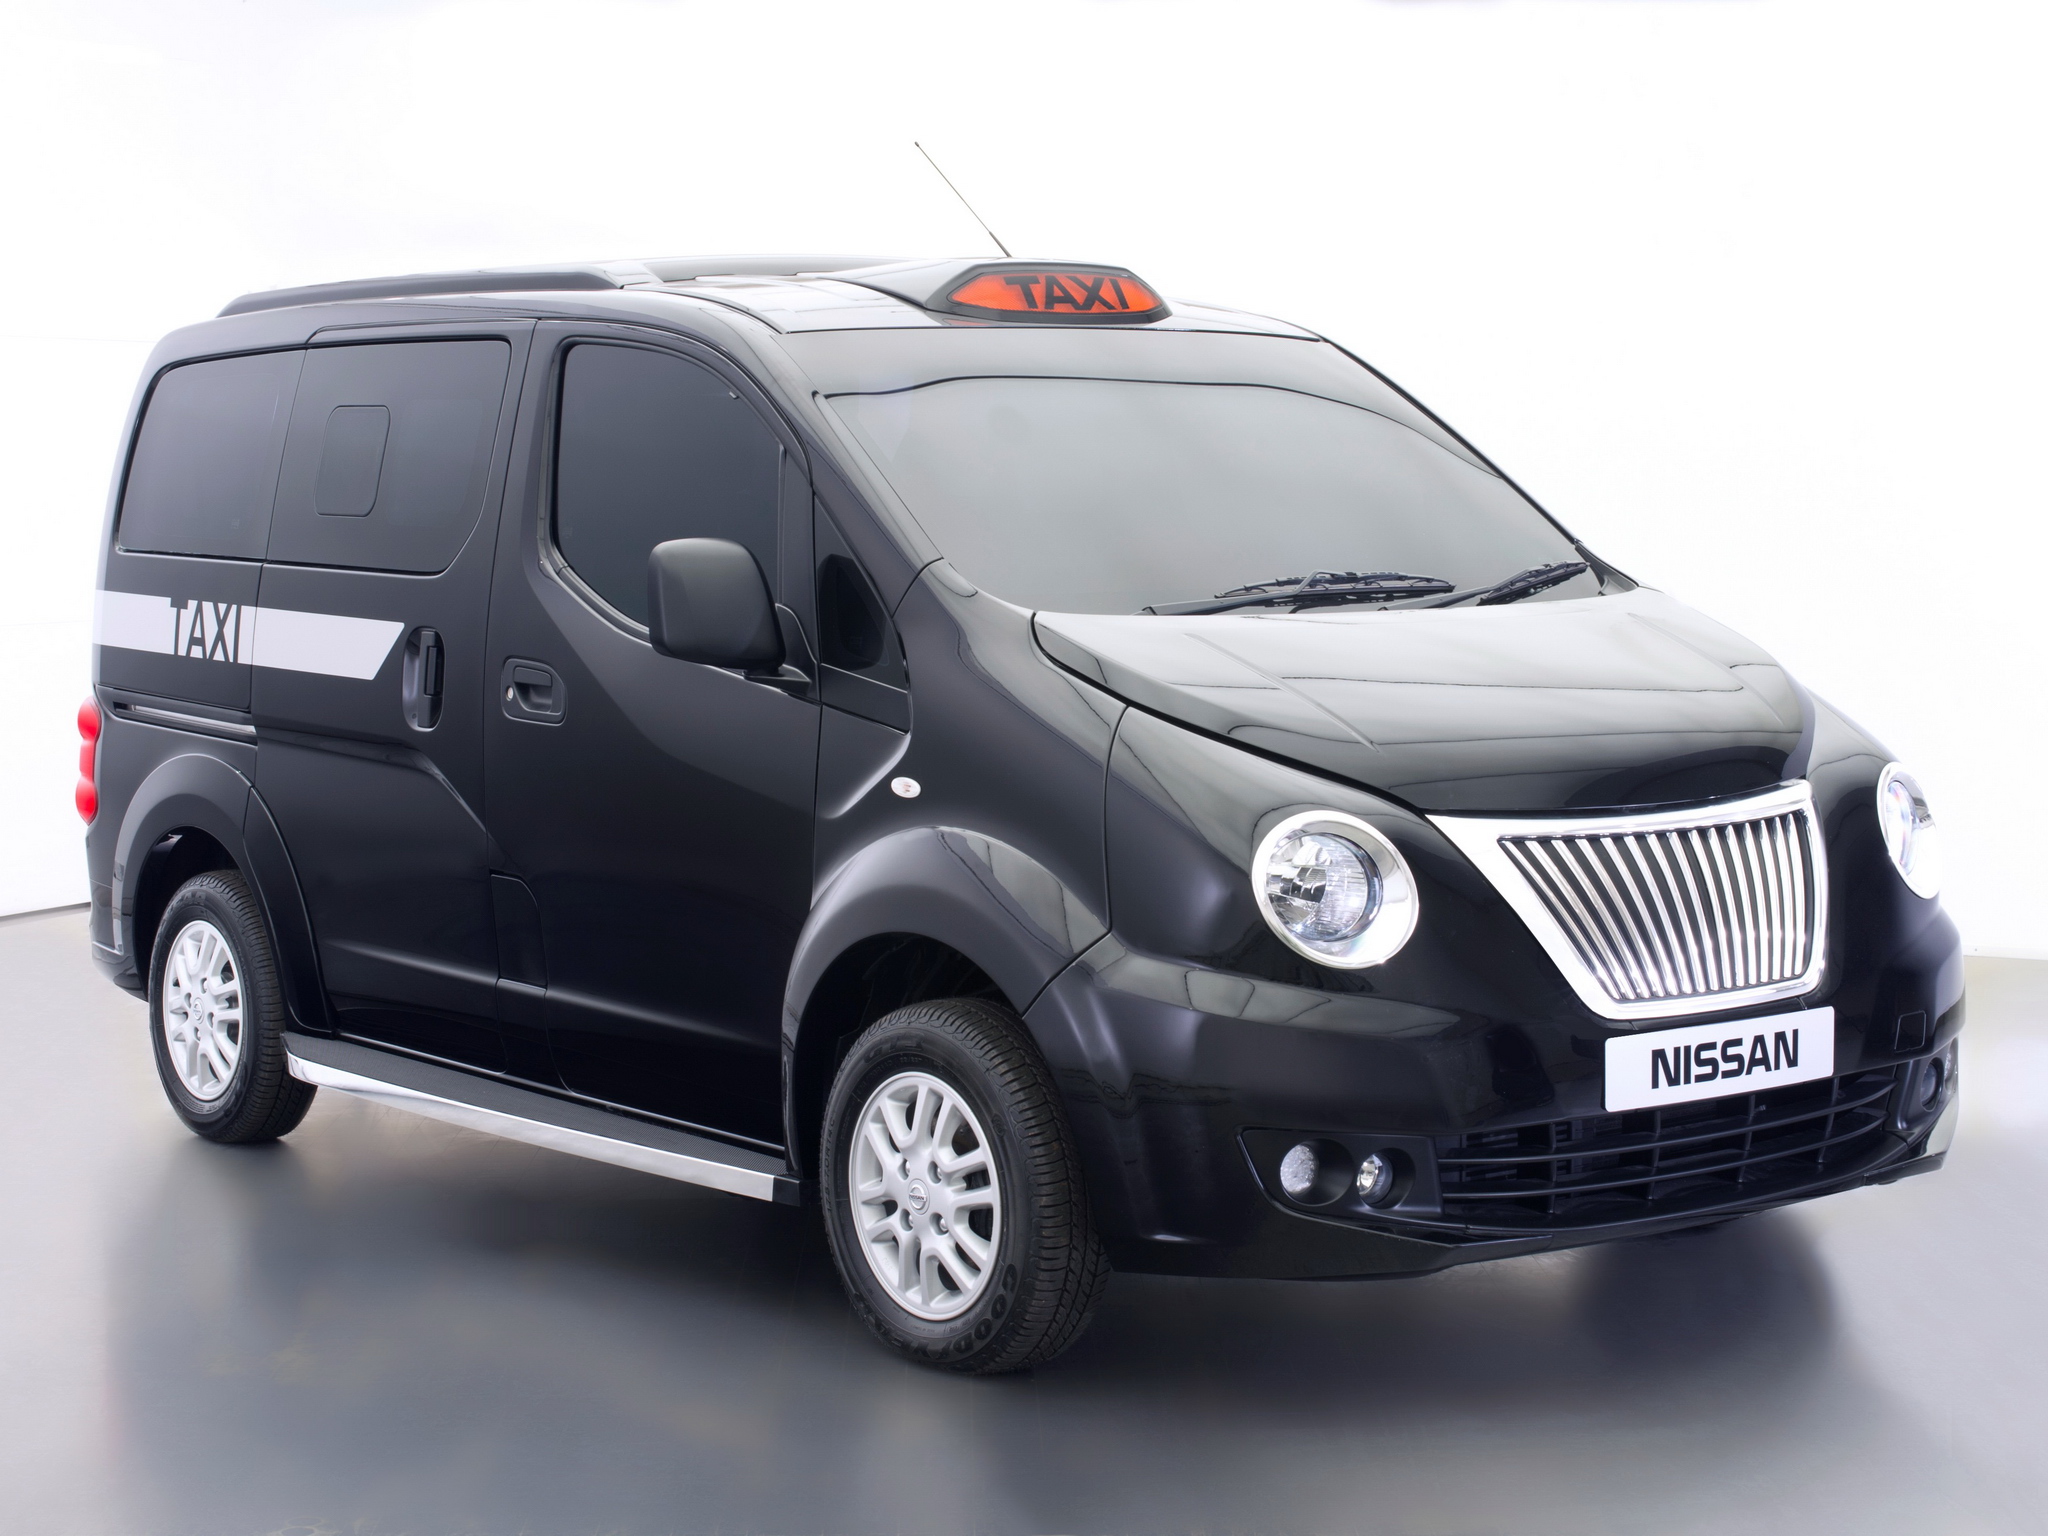 2014, Nissan, Nv200, London, Taxi, Transport, Van Wallpaper